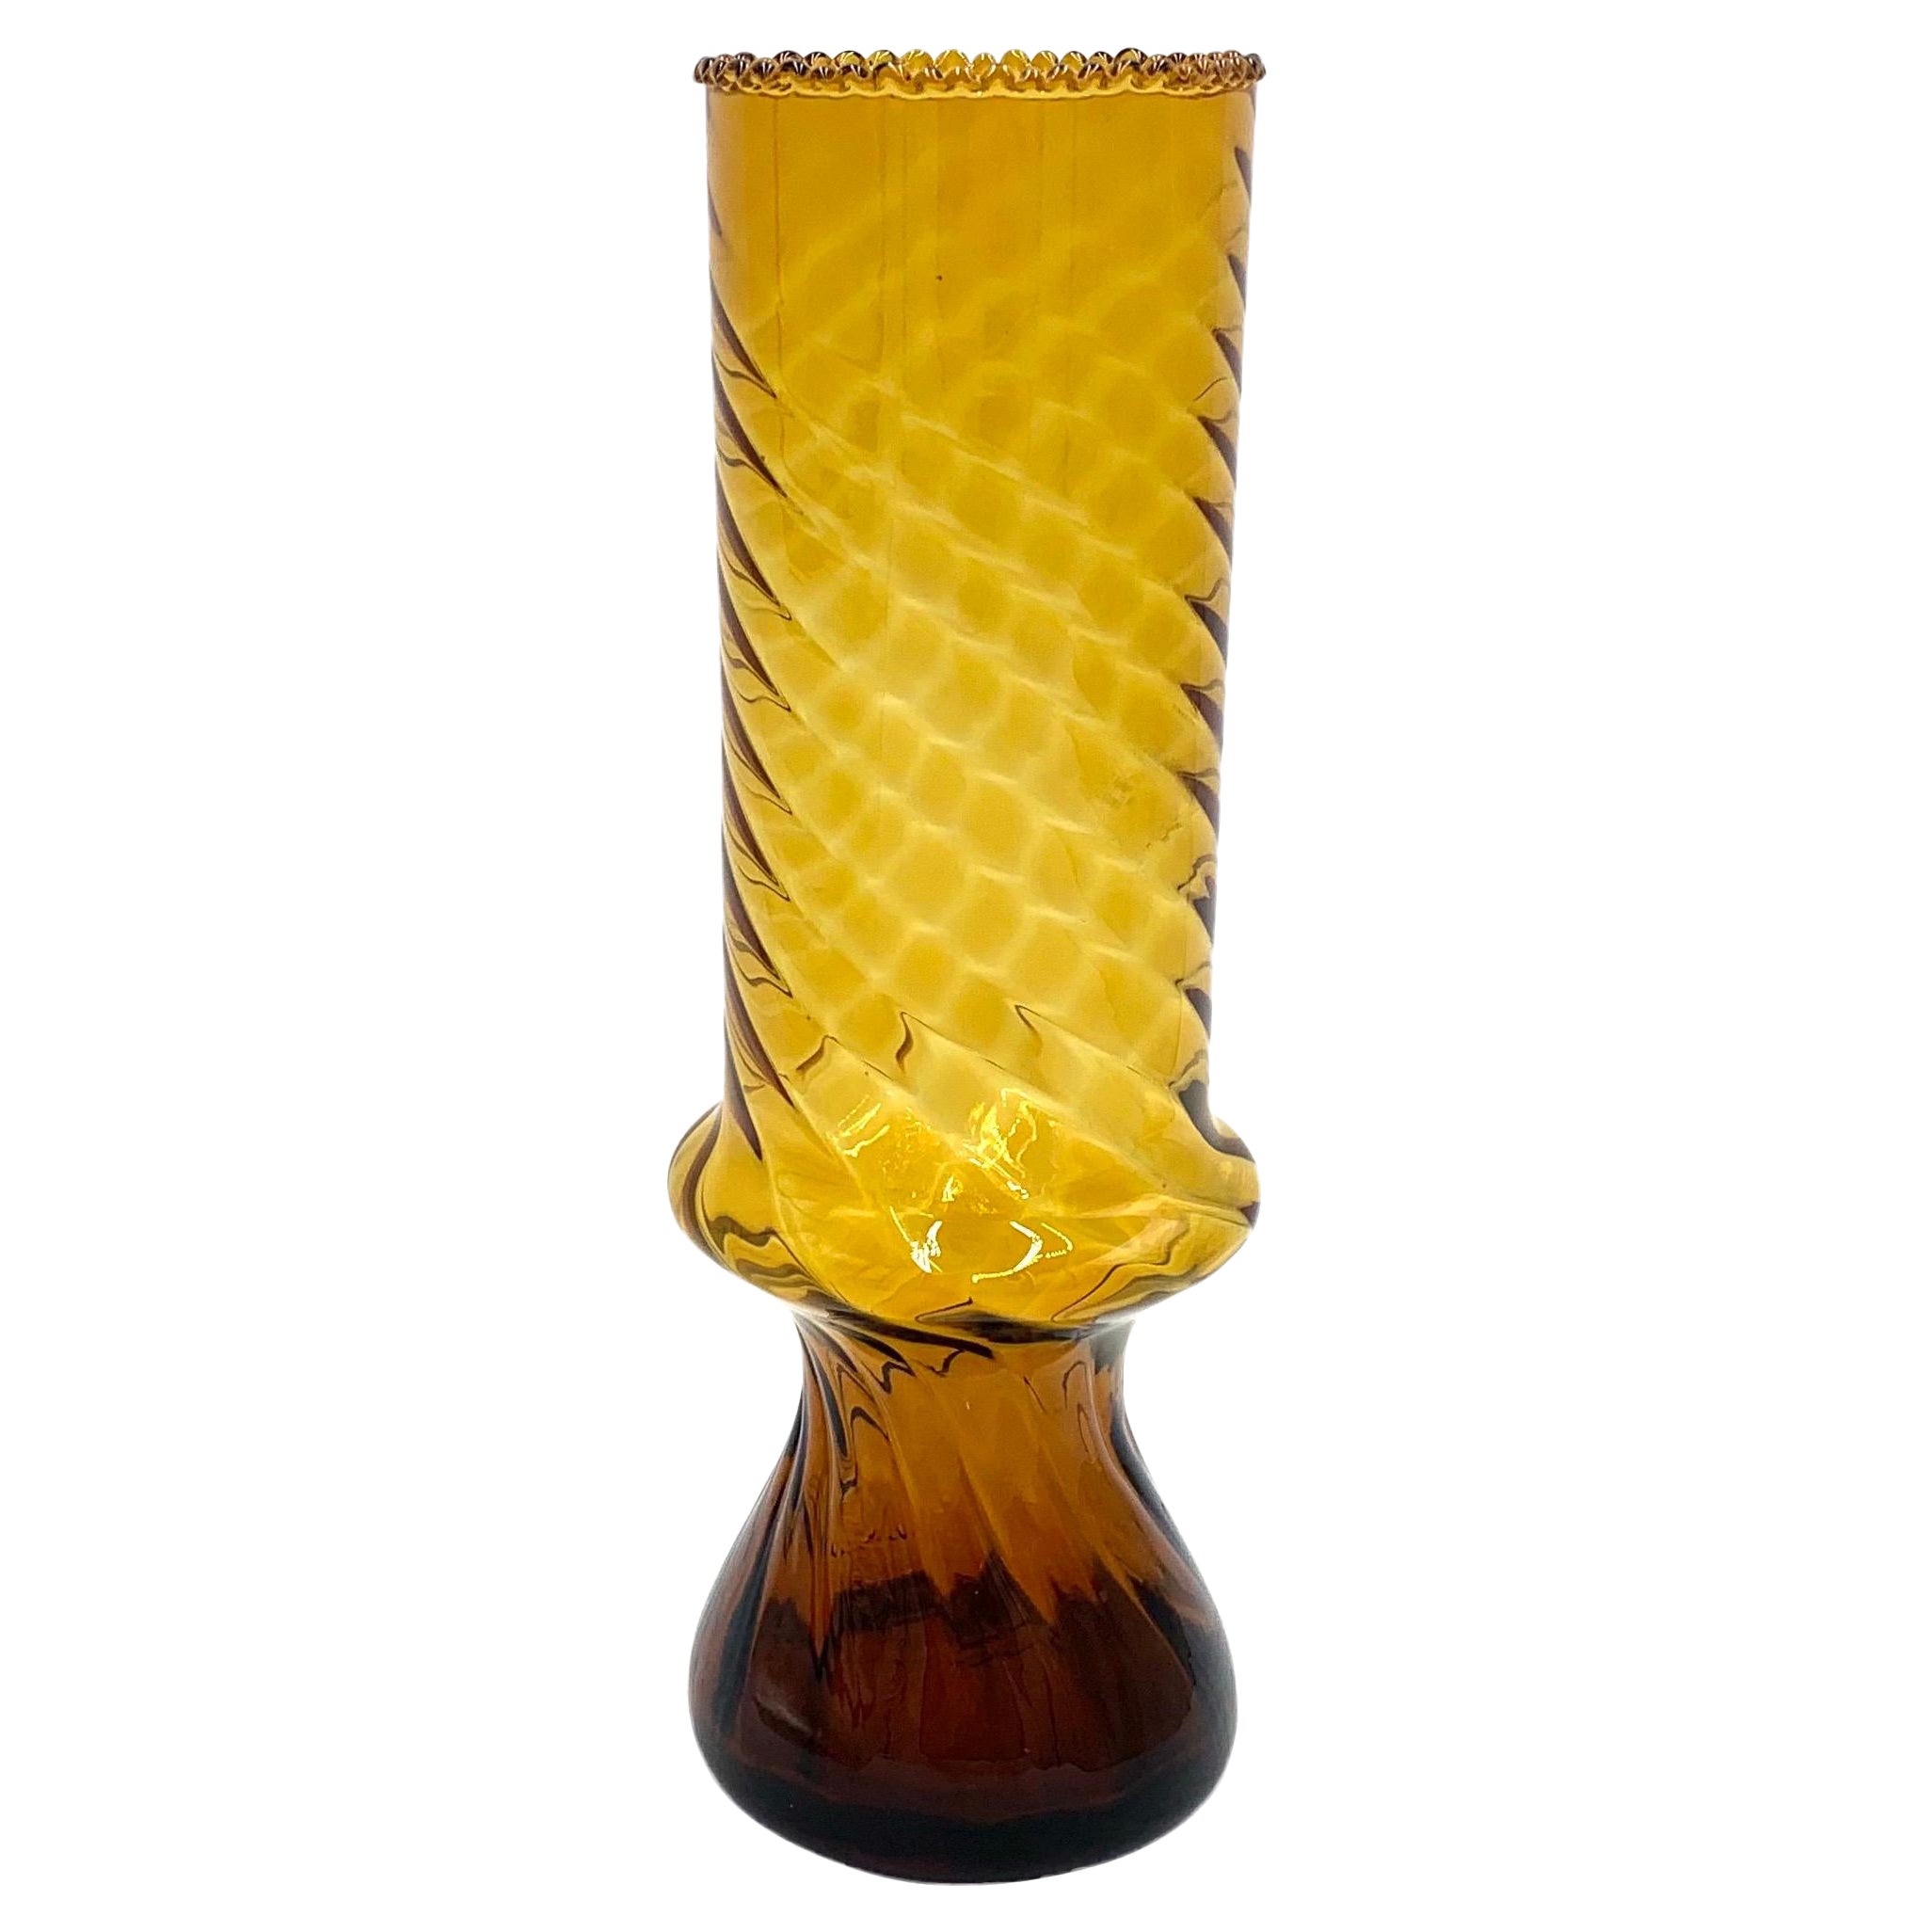 Yellow Midcentury Glass Vase, Poland, 1960s.